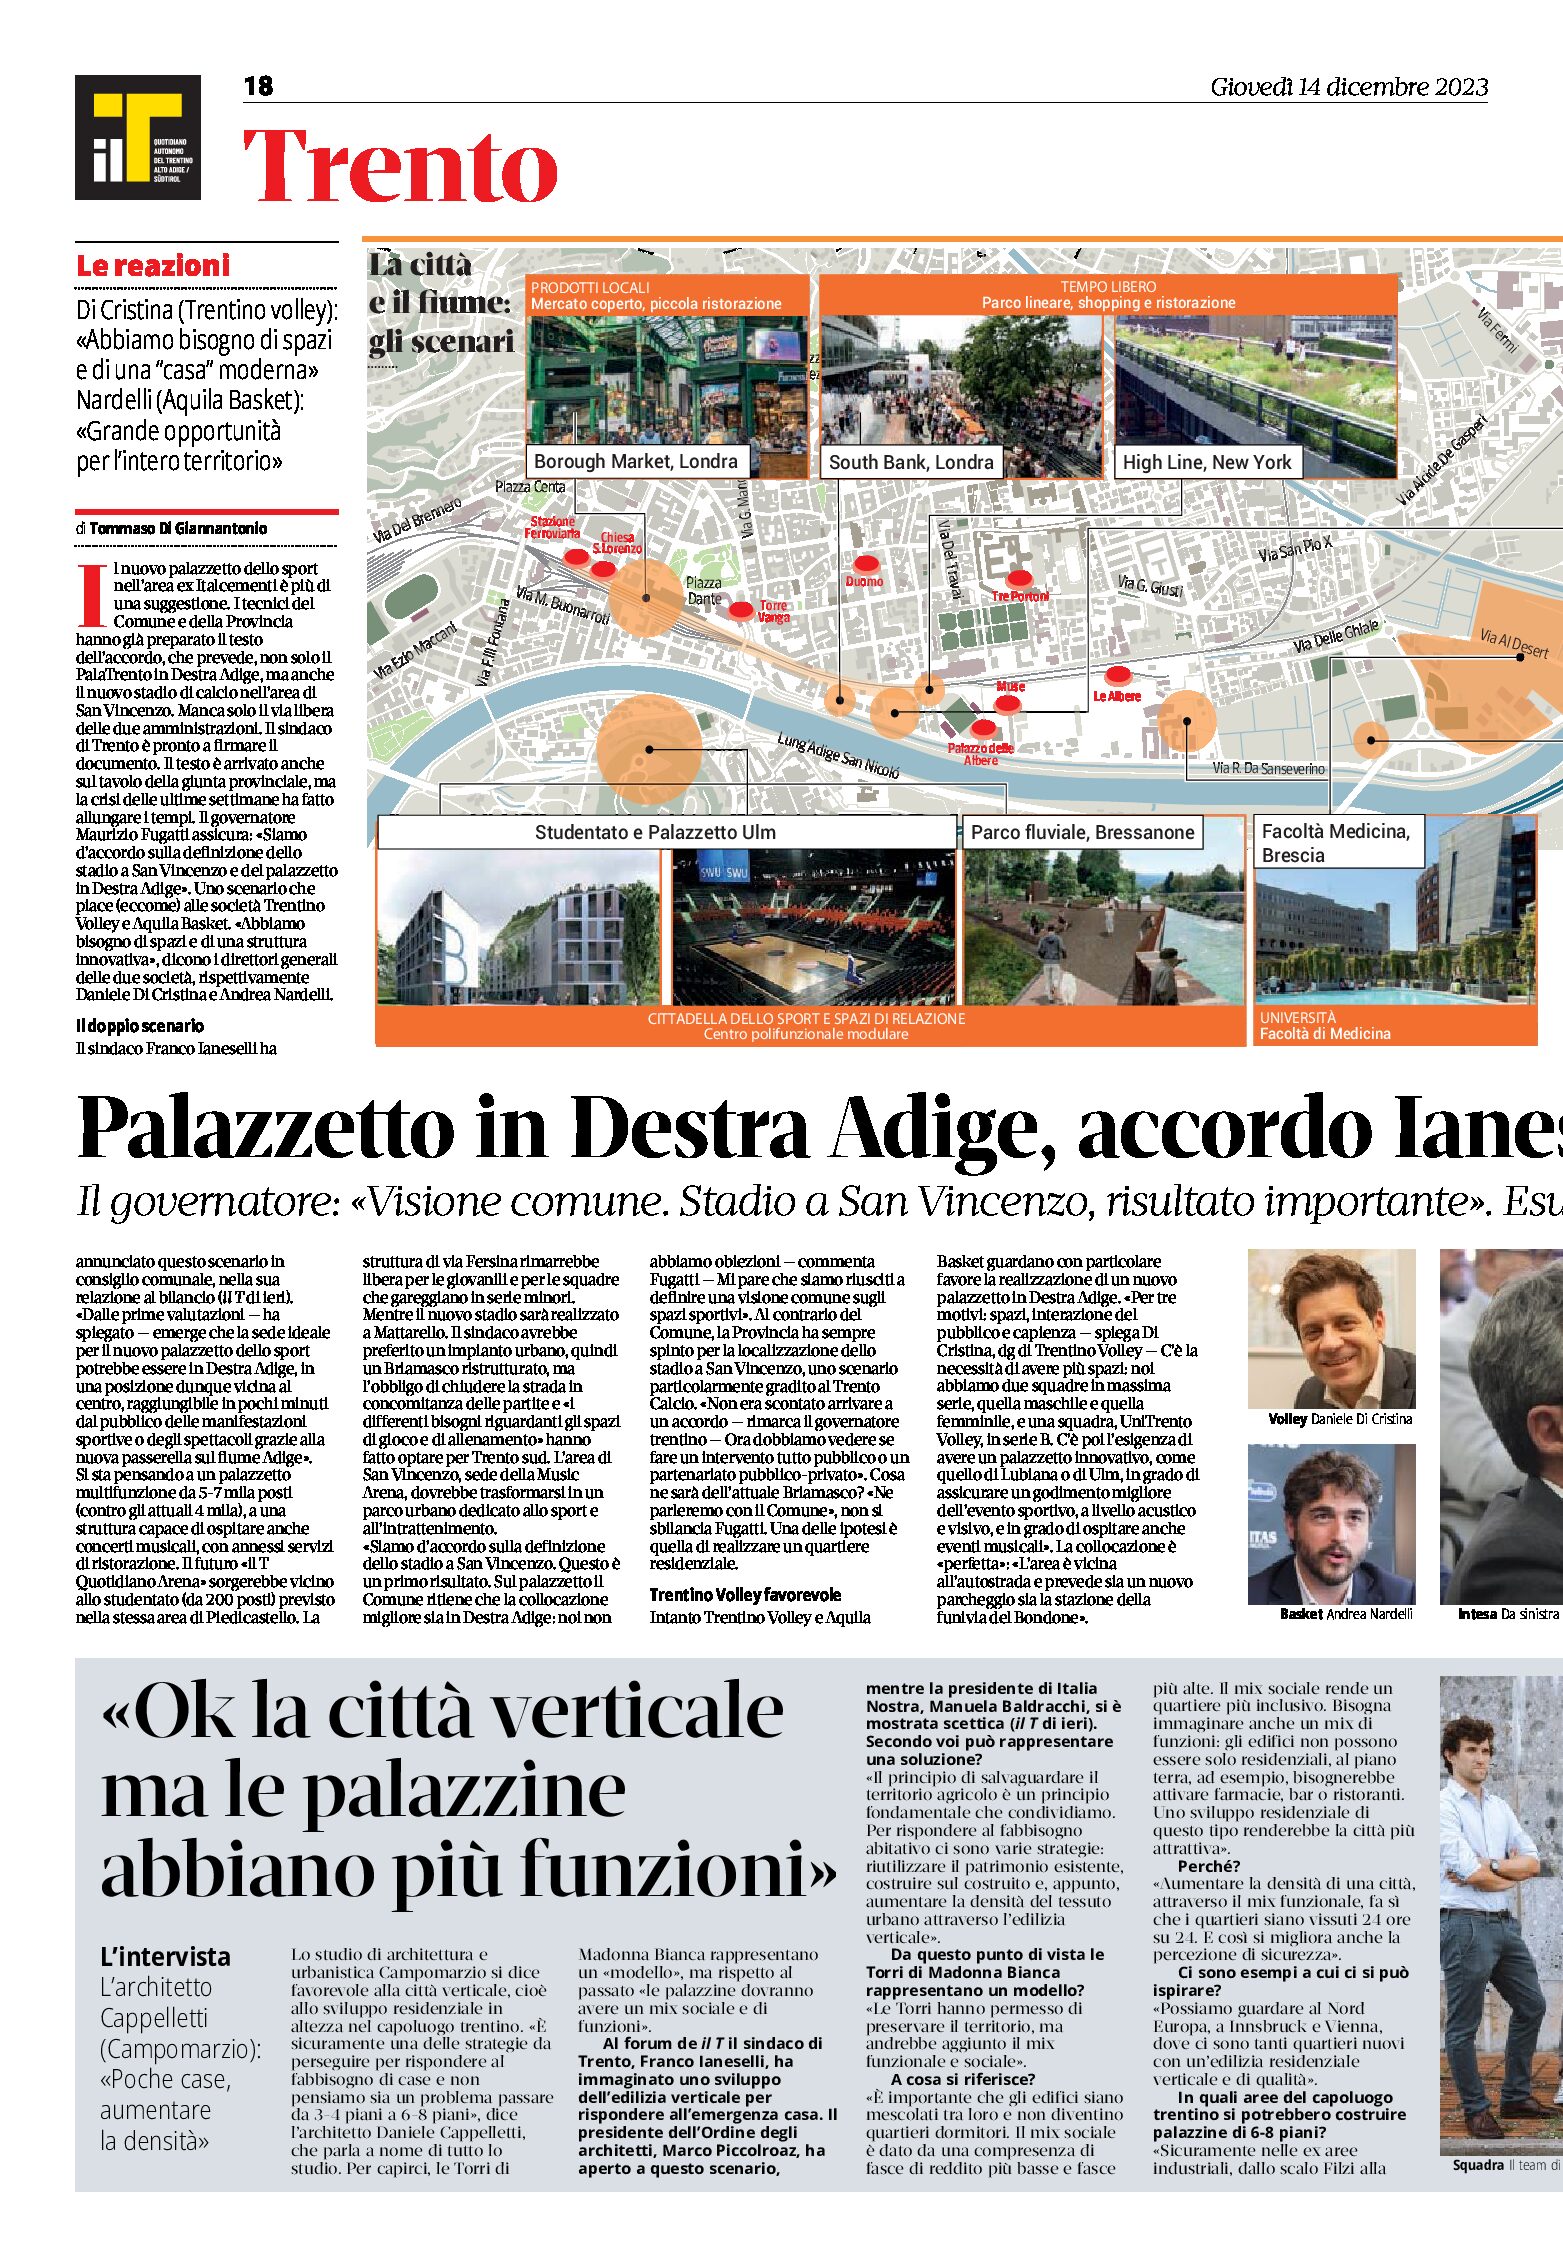 Trento: palazzetto dello sport in Destra Adige, stadio a San Vincenzo, visione comune Ianeselli-Fugatti